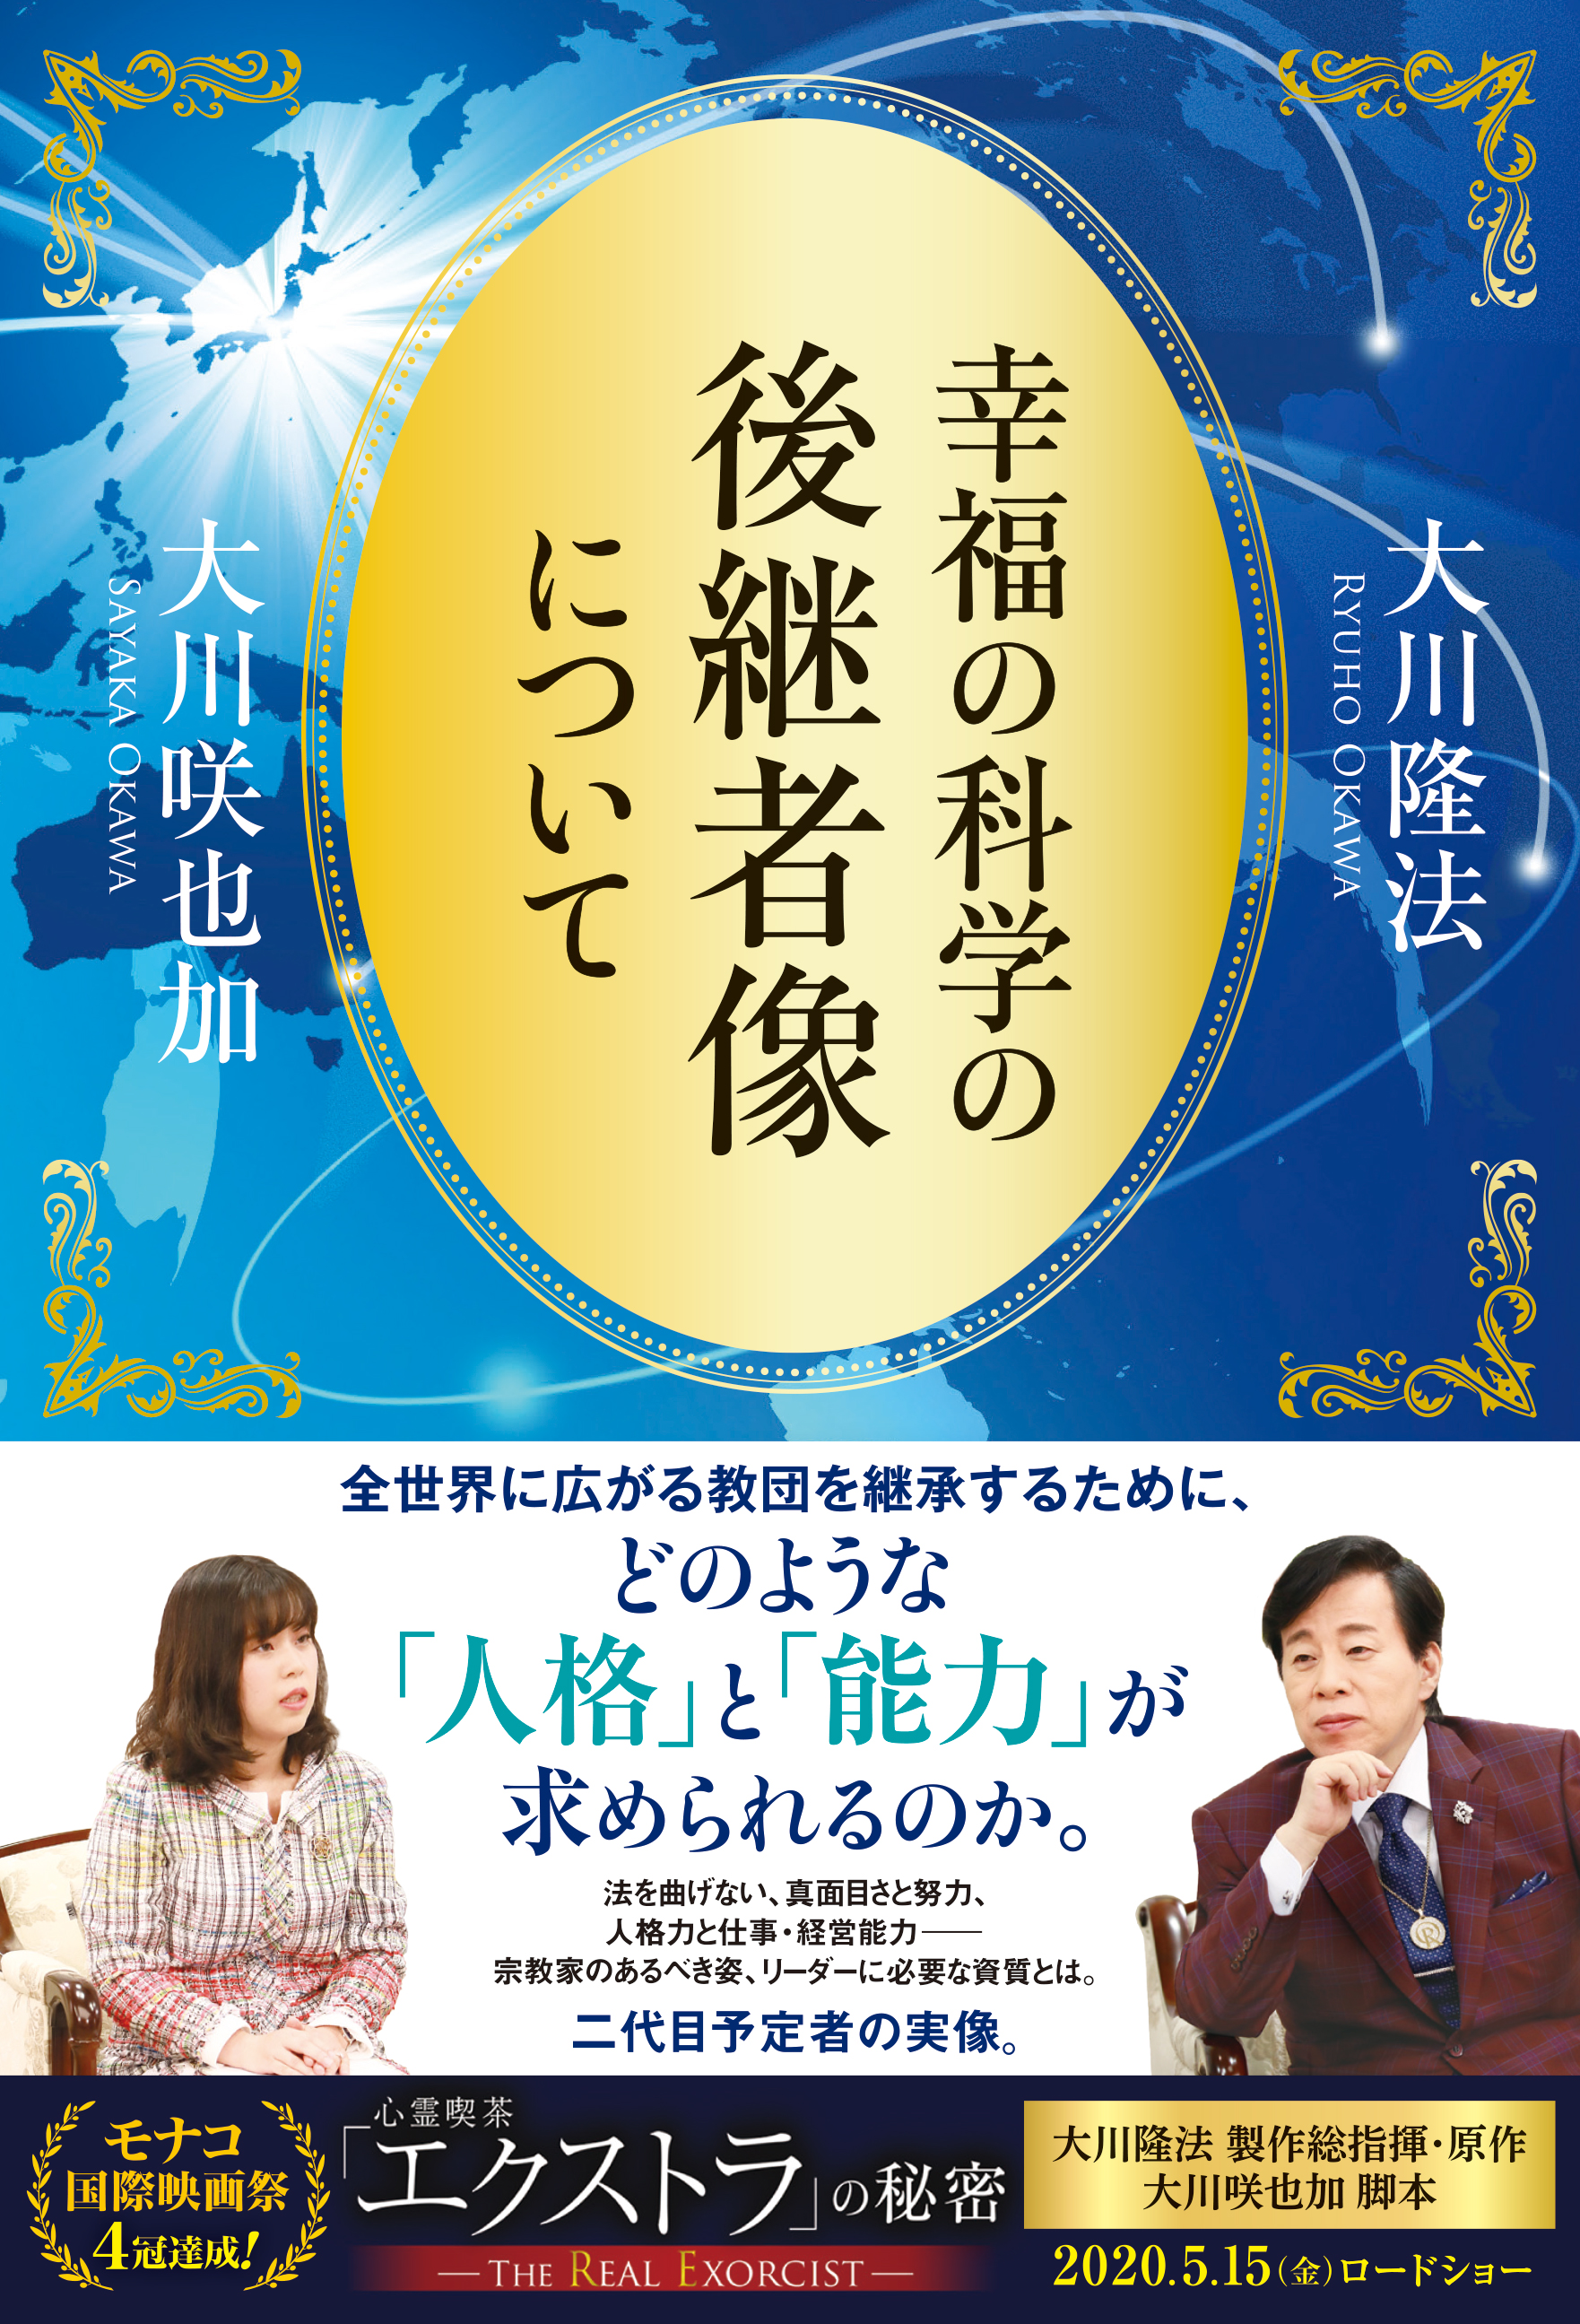 大川隆法 青銅の法 CD DVD 幸福の科学-